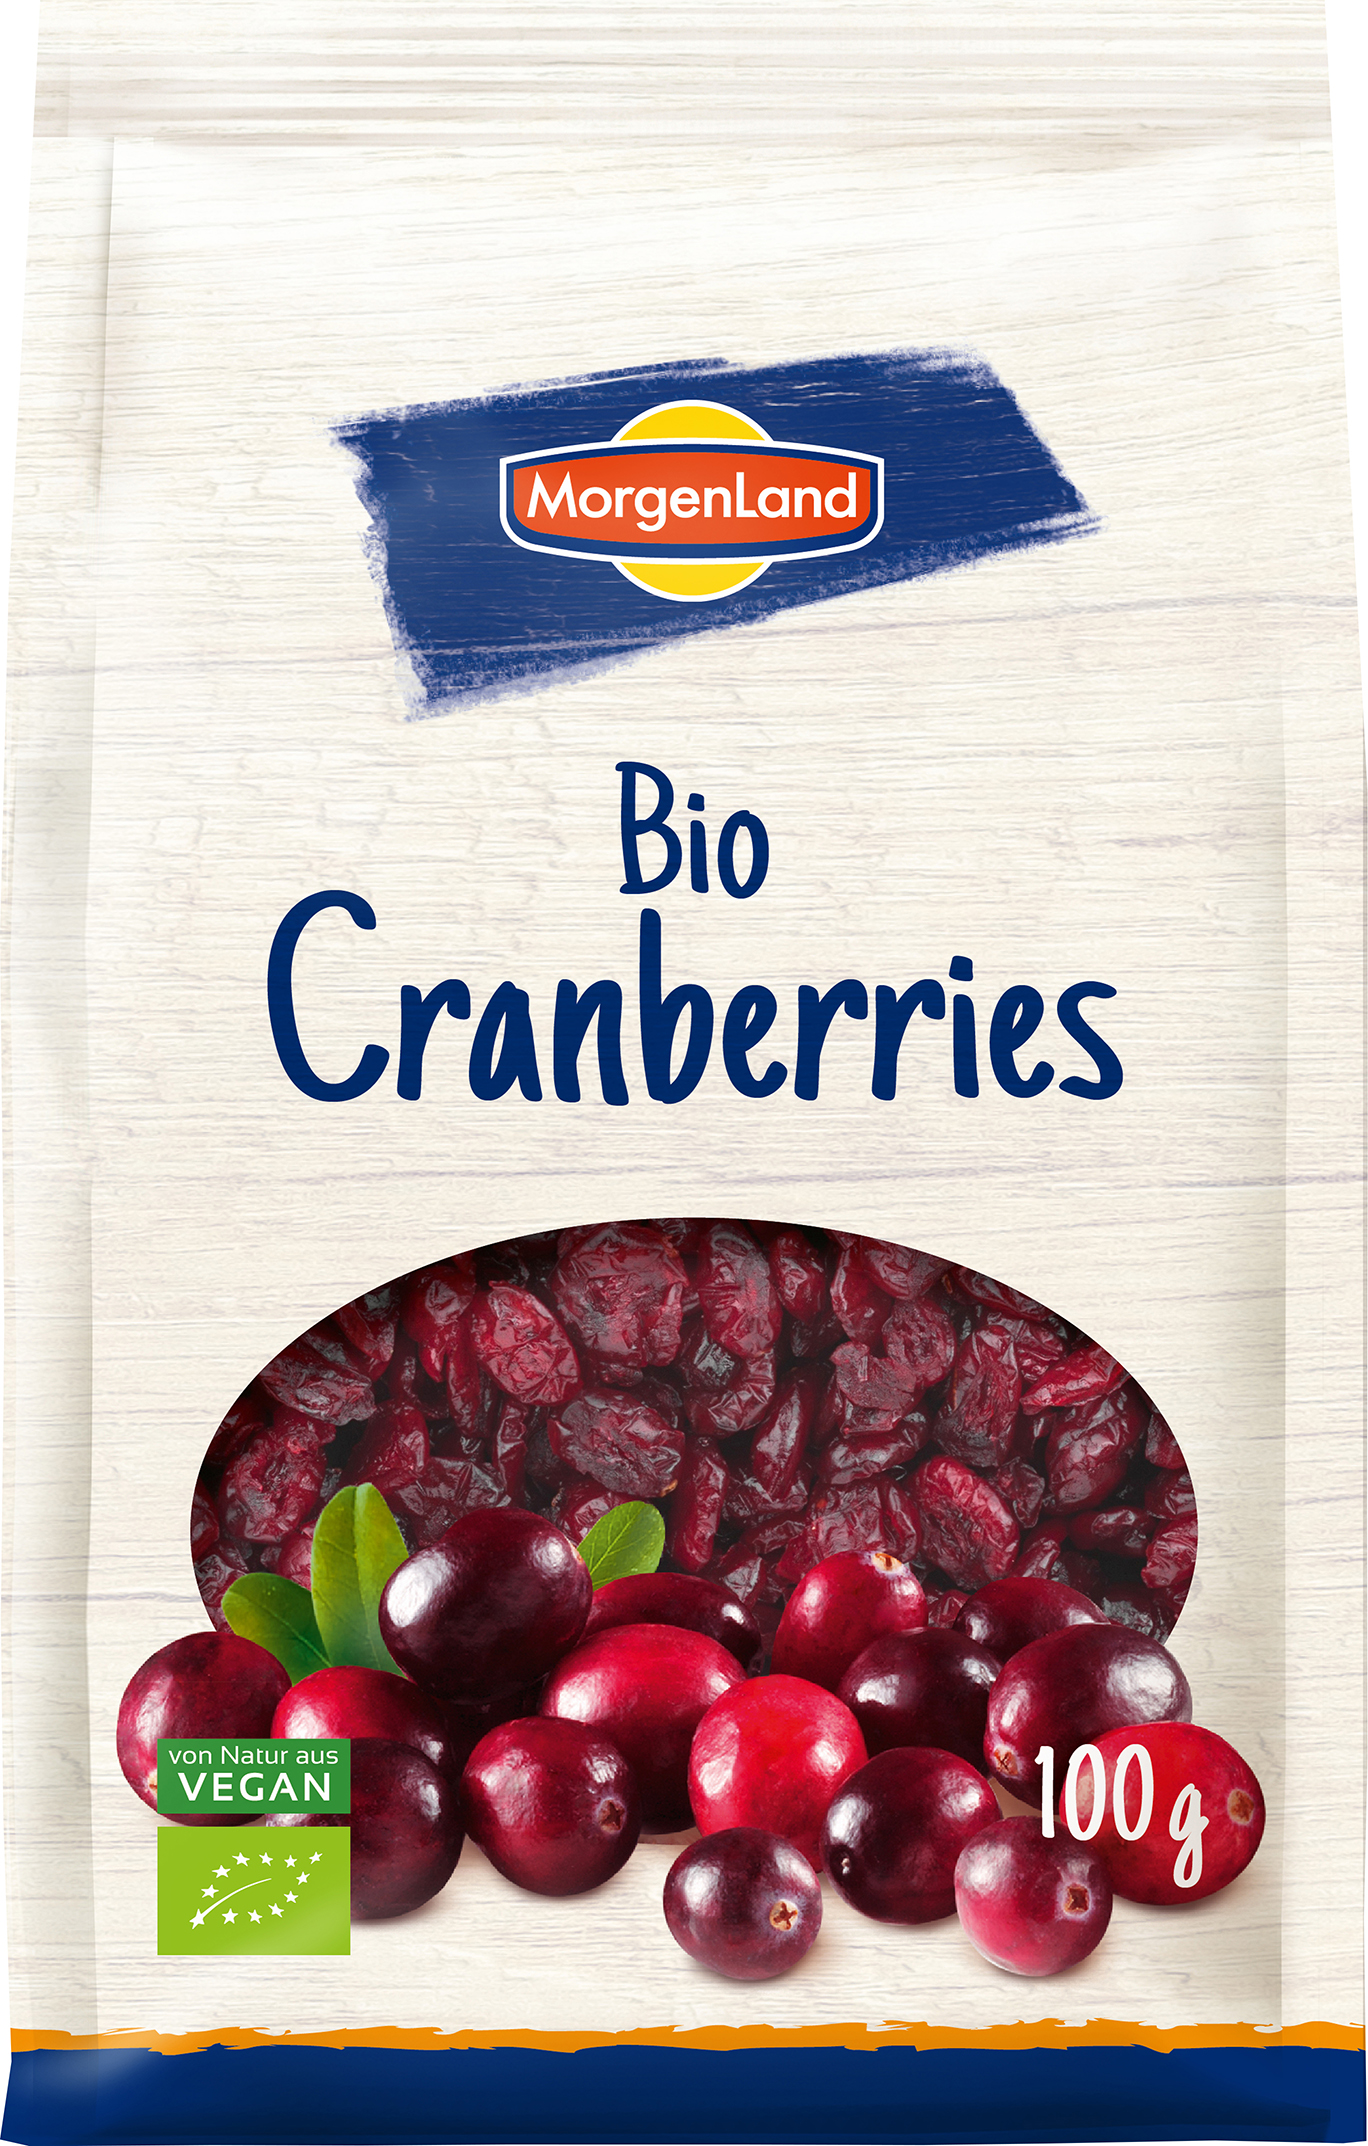 MorgenLand Cranberries 100g